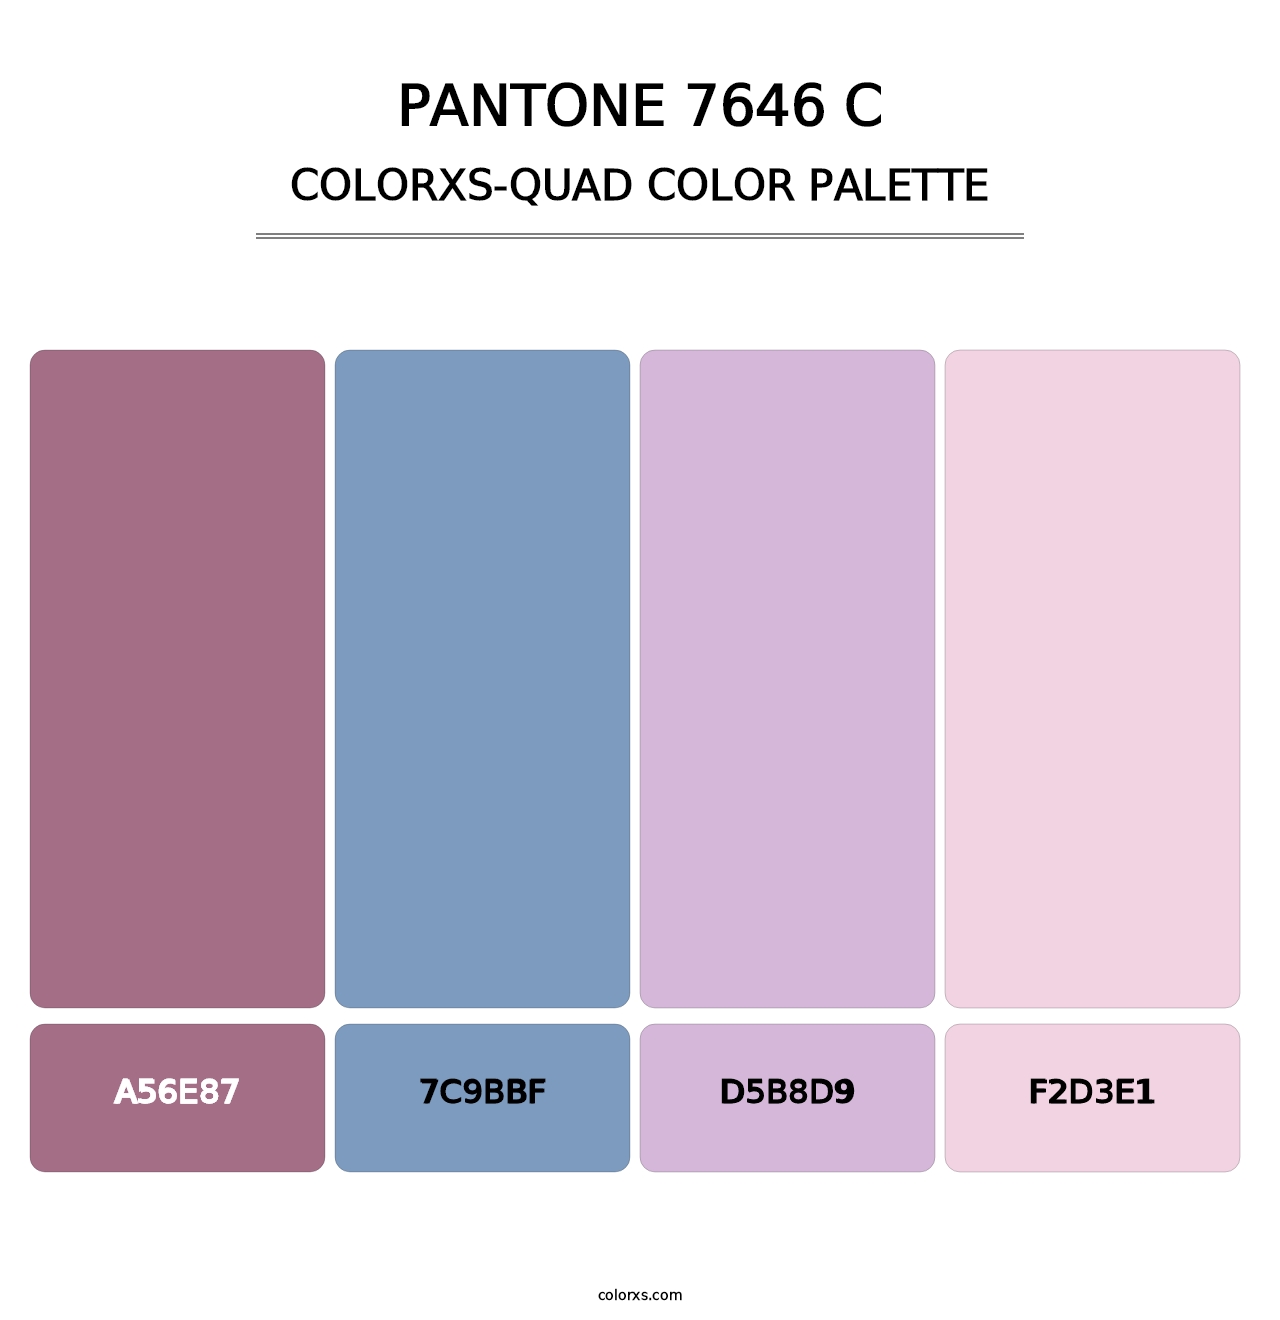 PANTONE 7646 C - Colorxs Quad Palette